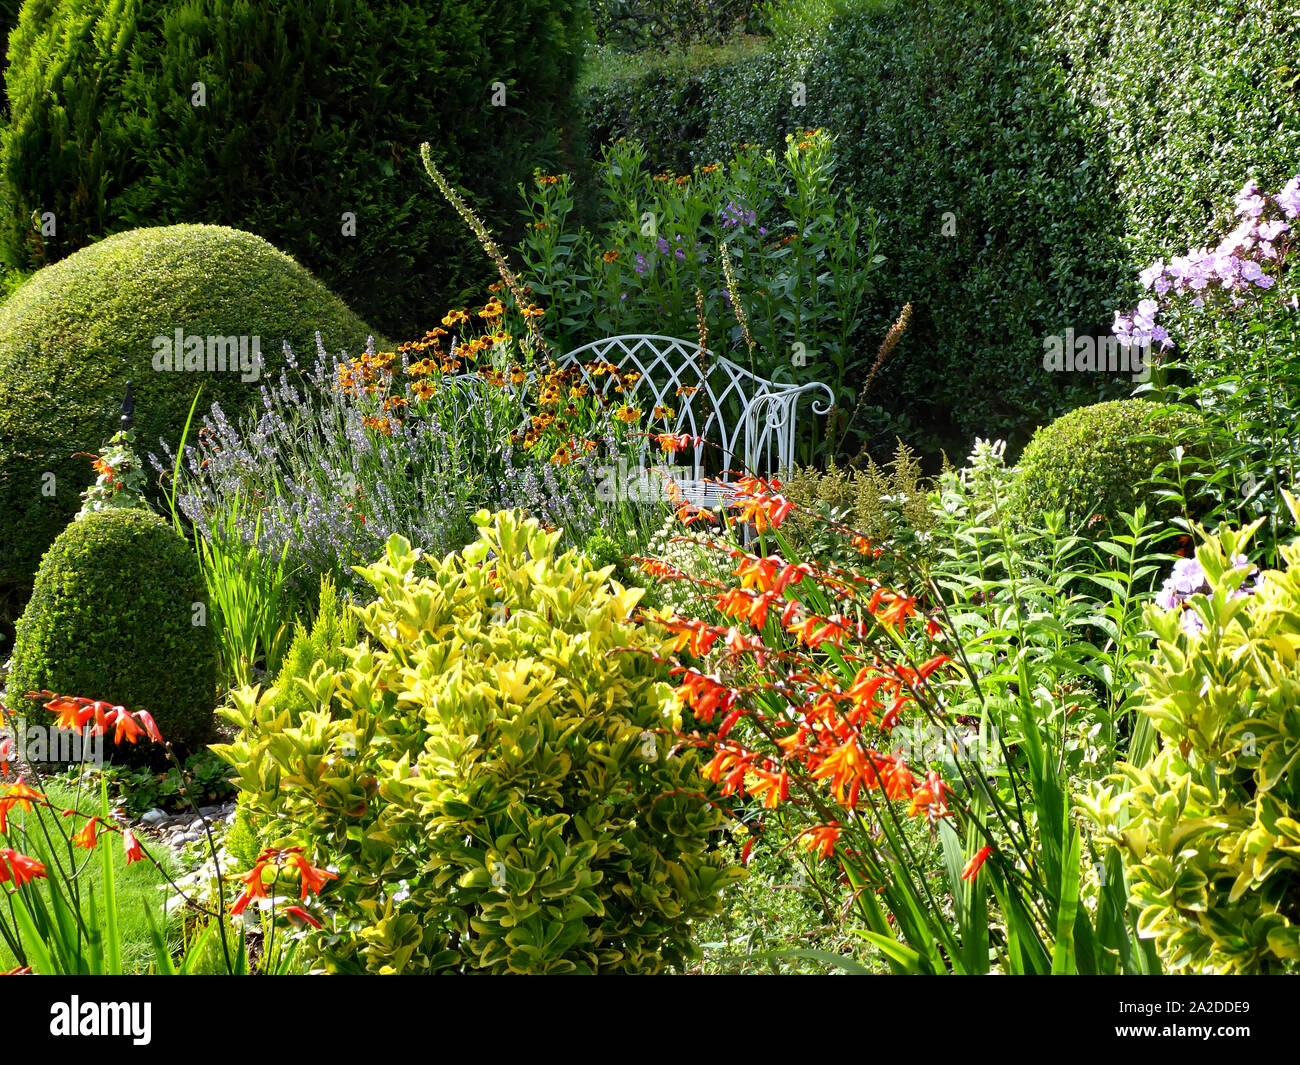 English country garden con flores blancas y rejas decorativas bench Foto de stock